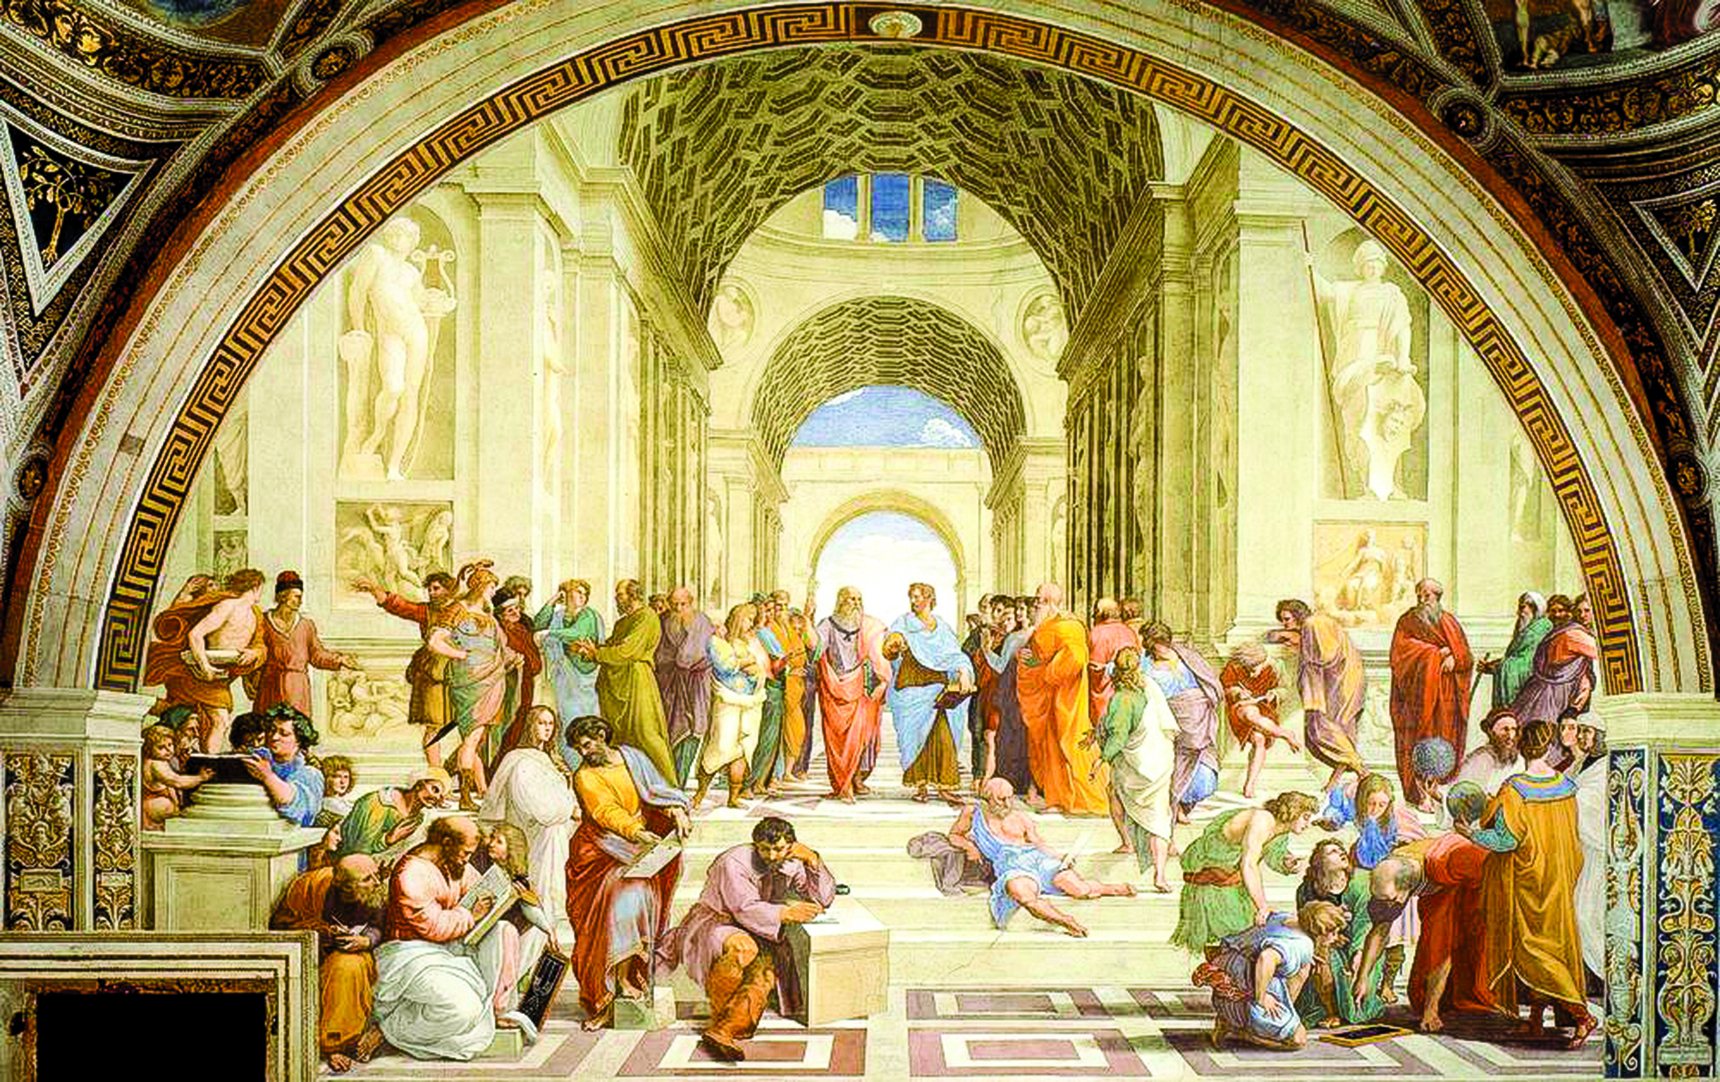 拉斐爾（Raphael）1509年～1510年在梵蒂岡所繪製的《雅典學院》（The School of Athens），濕壁畫，底寬770公分，收藏於意大利羅馬梵蒂岡宮簽署大廳（Stanza della Segnatura）。（公有領域）